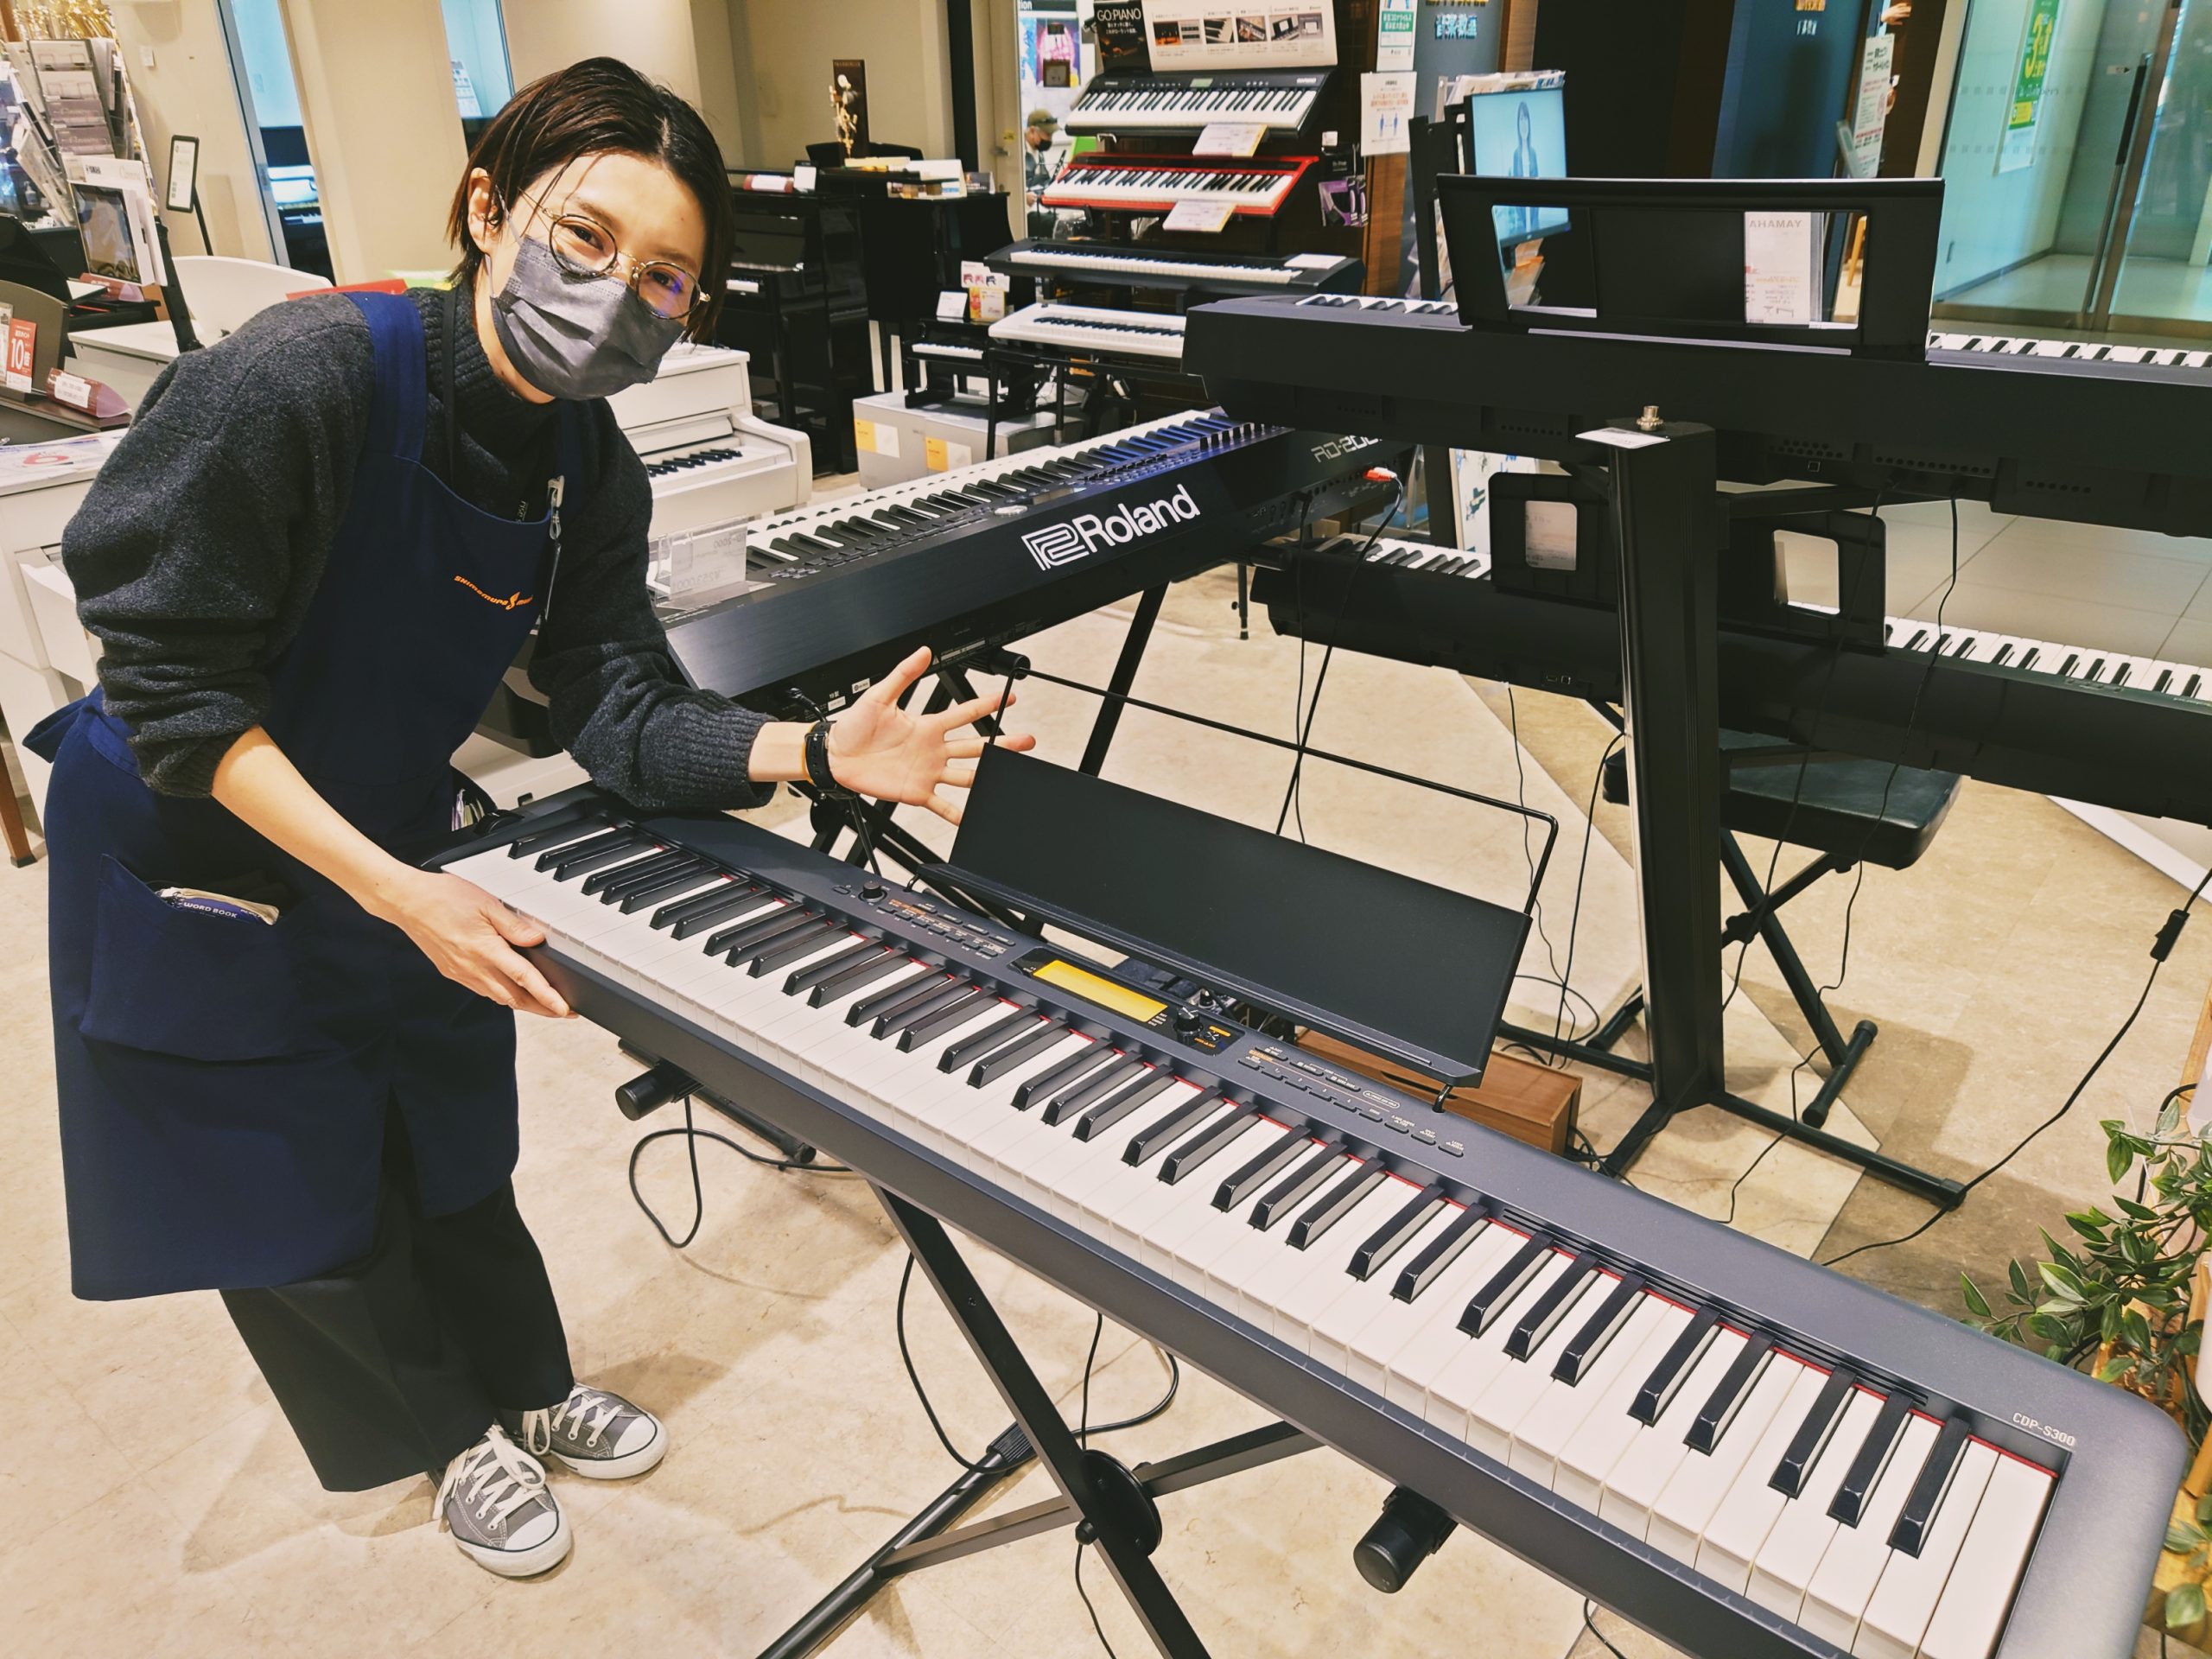 これからピアノを購入される方におすすめ！二子玉川店ではピアノのご相談承っています♪ 当店HPをご覧頂きありがとうございます！ピアノ選びでお悩みはございませんか？二子玉川店のピアノ売り場では各メーカー豊富な展示台数を取り揃えており、専門スタッフがみなさまをお待ちしております。ピアノアドバイザー（社内資 […]